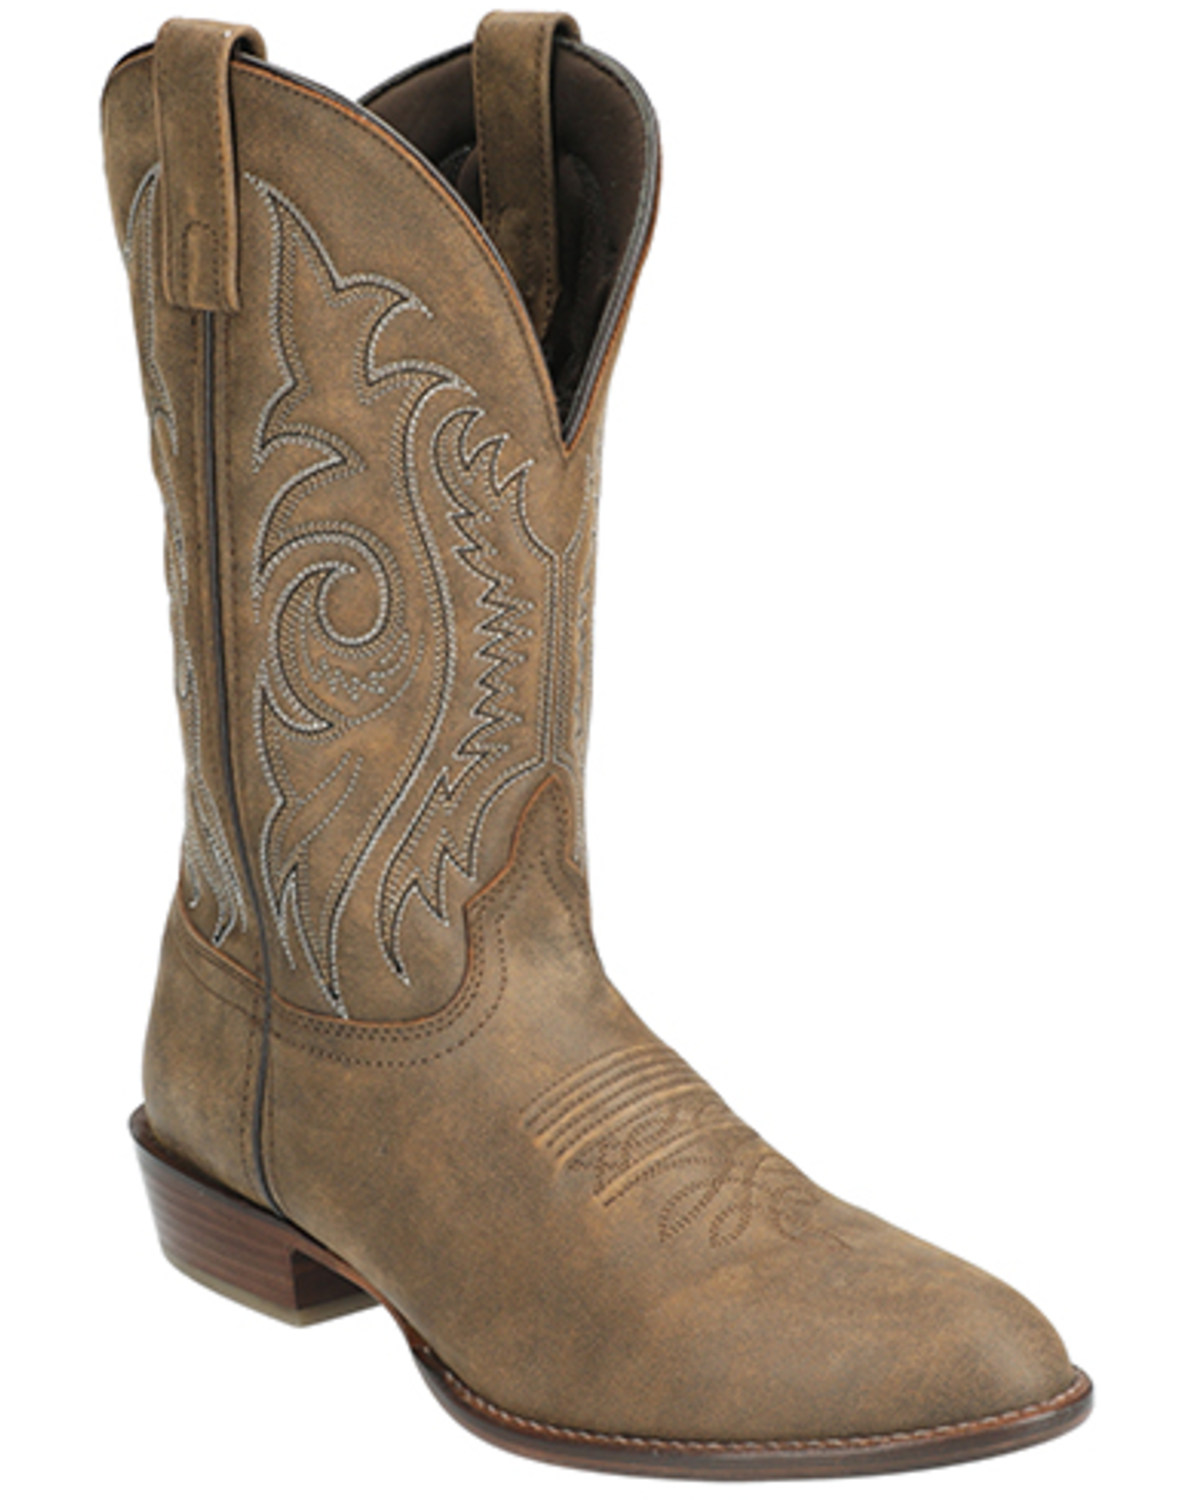 Smoky Mountain Men's Dalton Western Boots - Round Toe